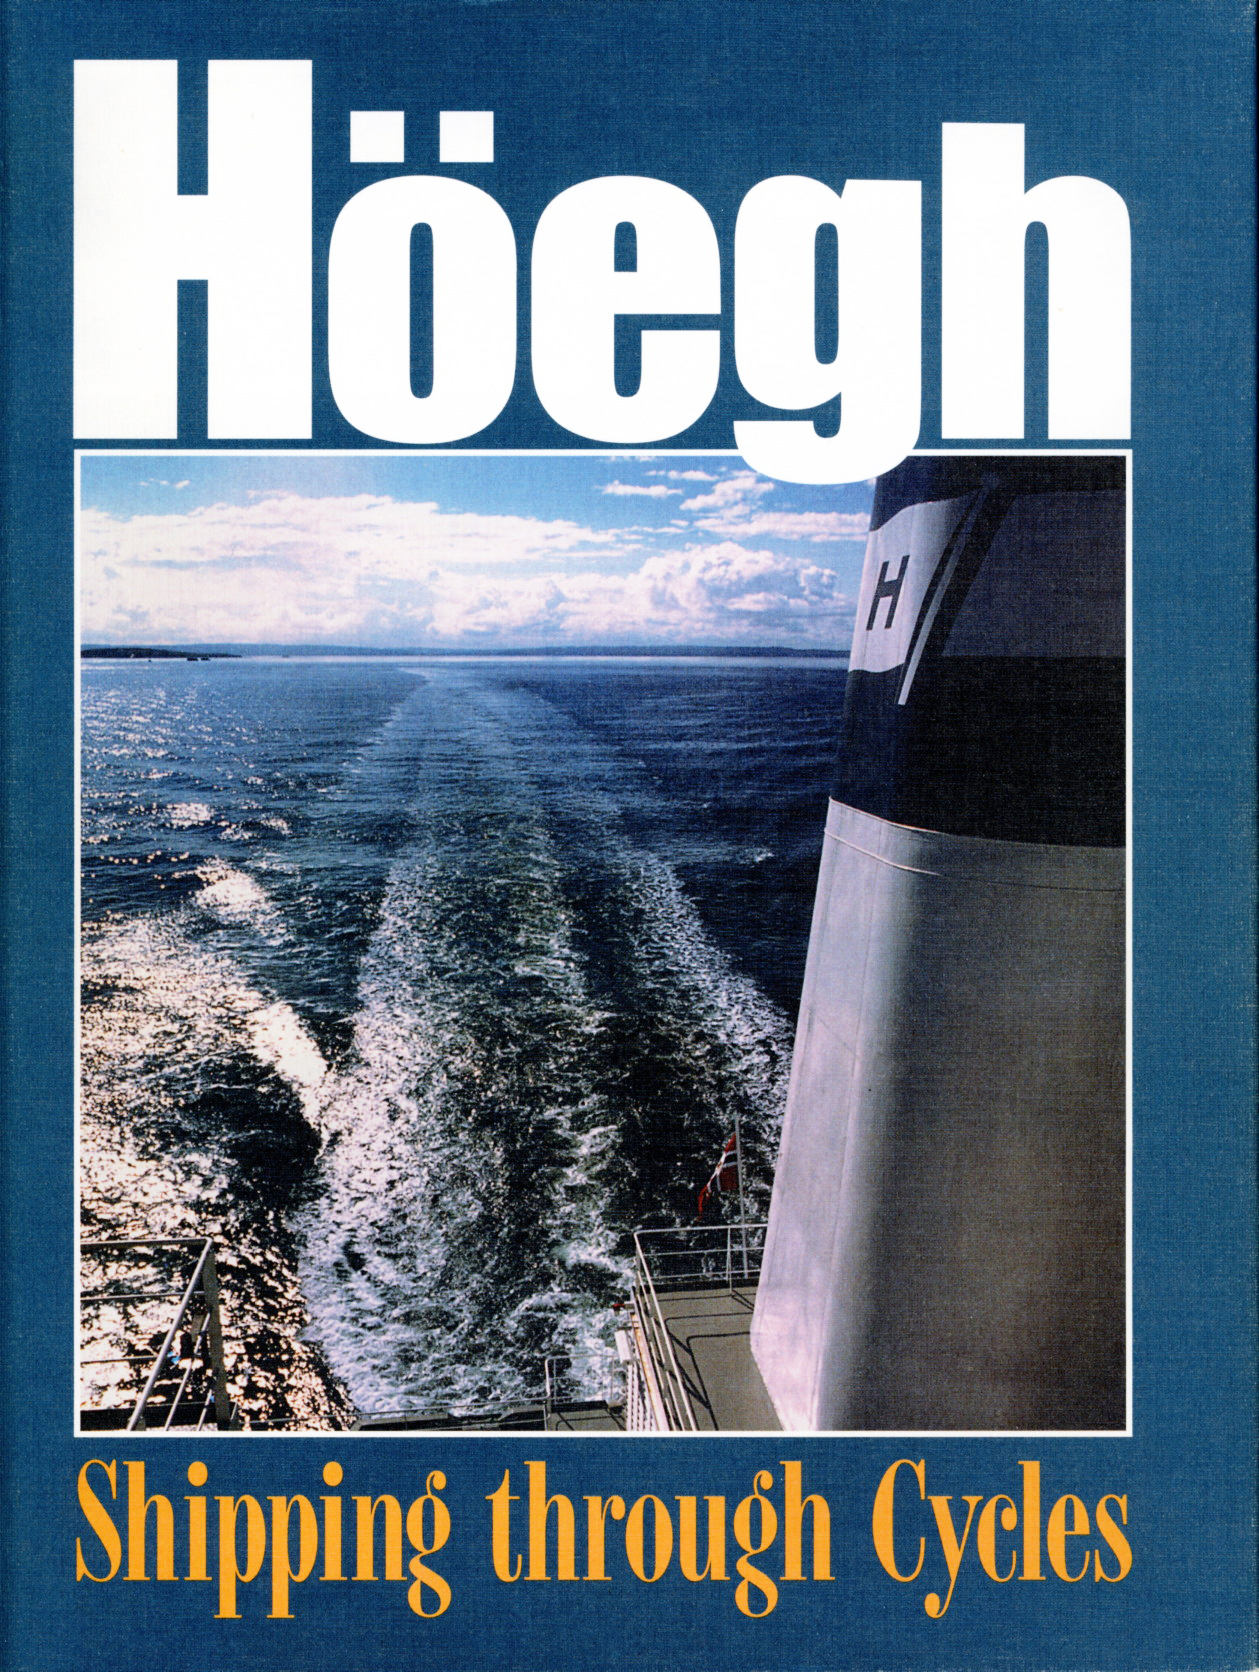 Höegh Shipping through cycles 1997